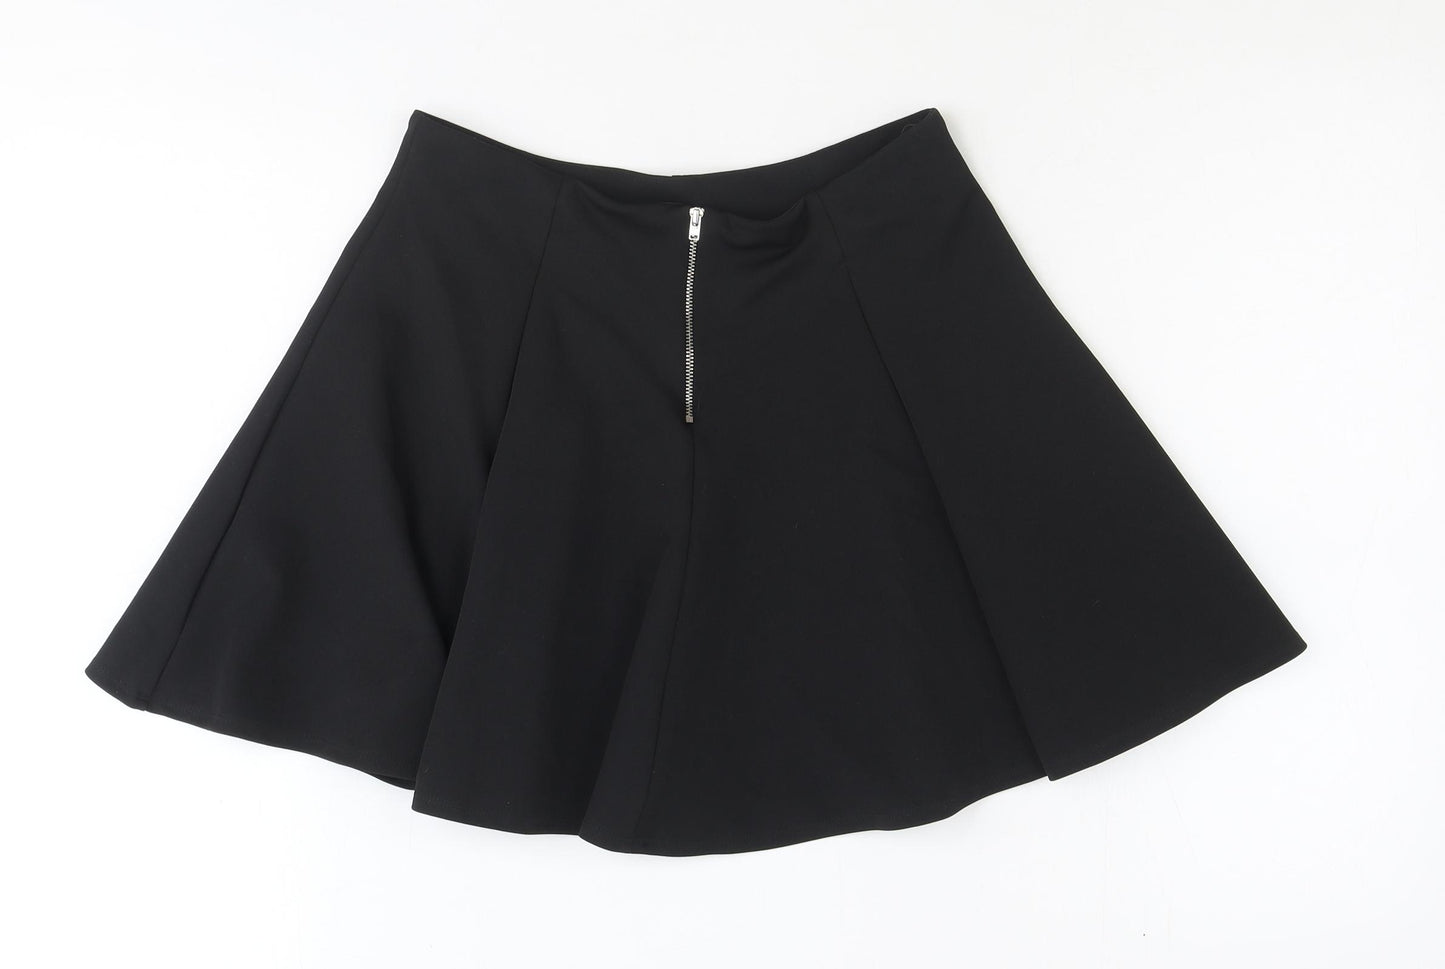 New Look Girls Black Polyester Skater Skirt Size 10 Years Regular Zip